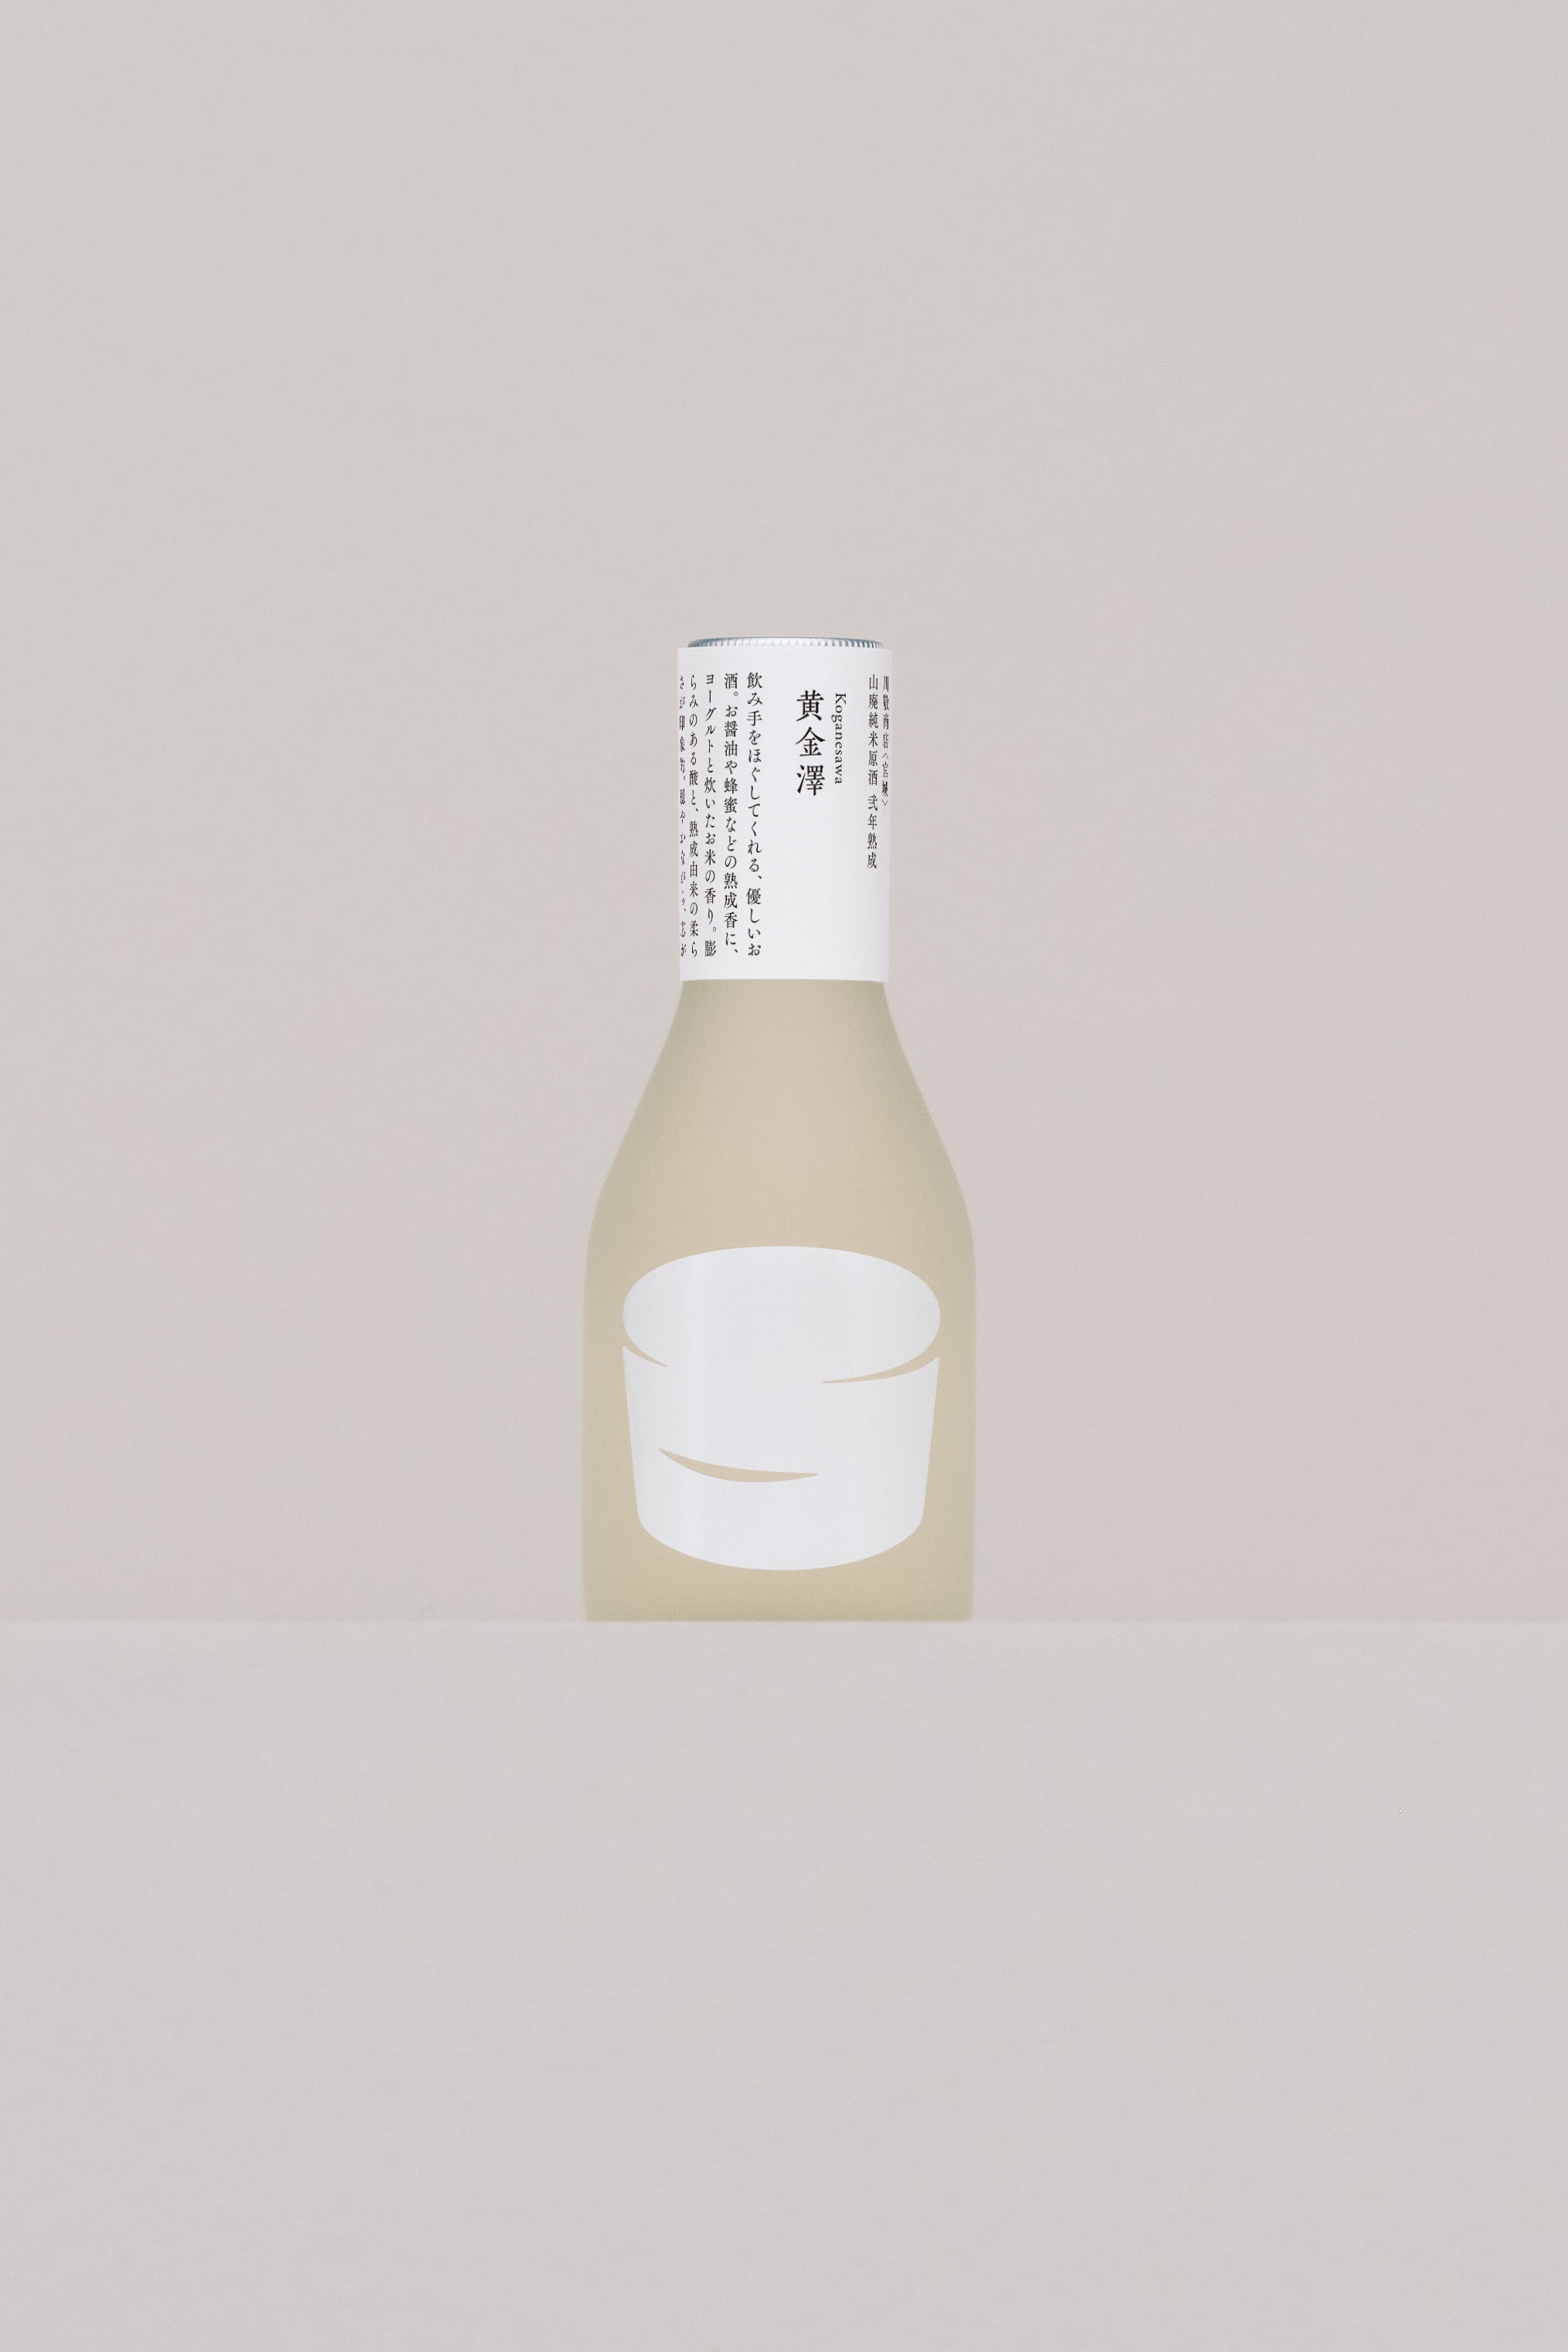 黄金澤 山廃純米酒 弐年熟成 – きょうの日本酒